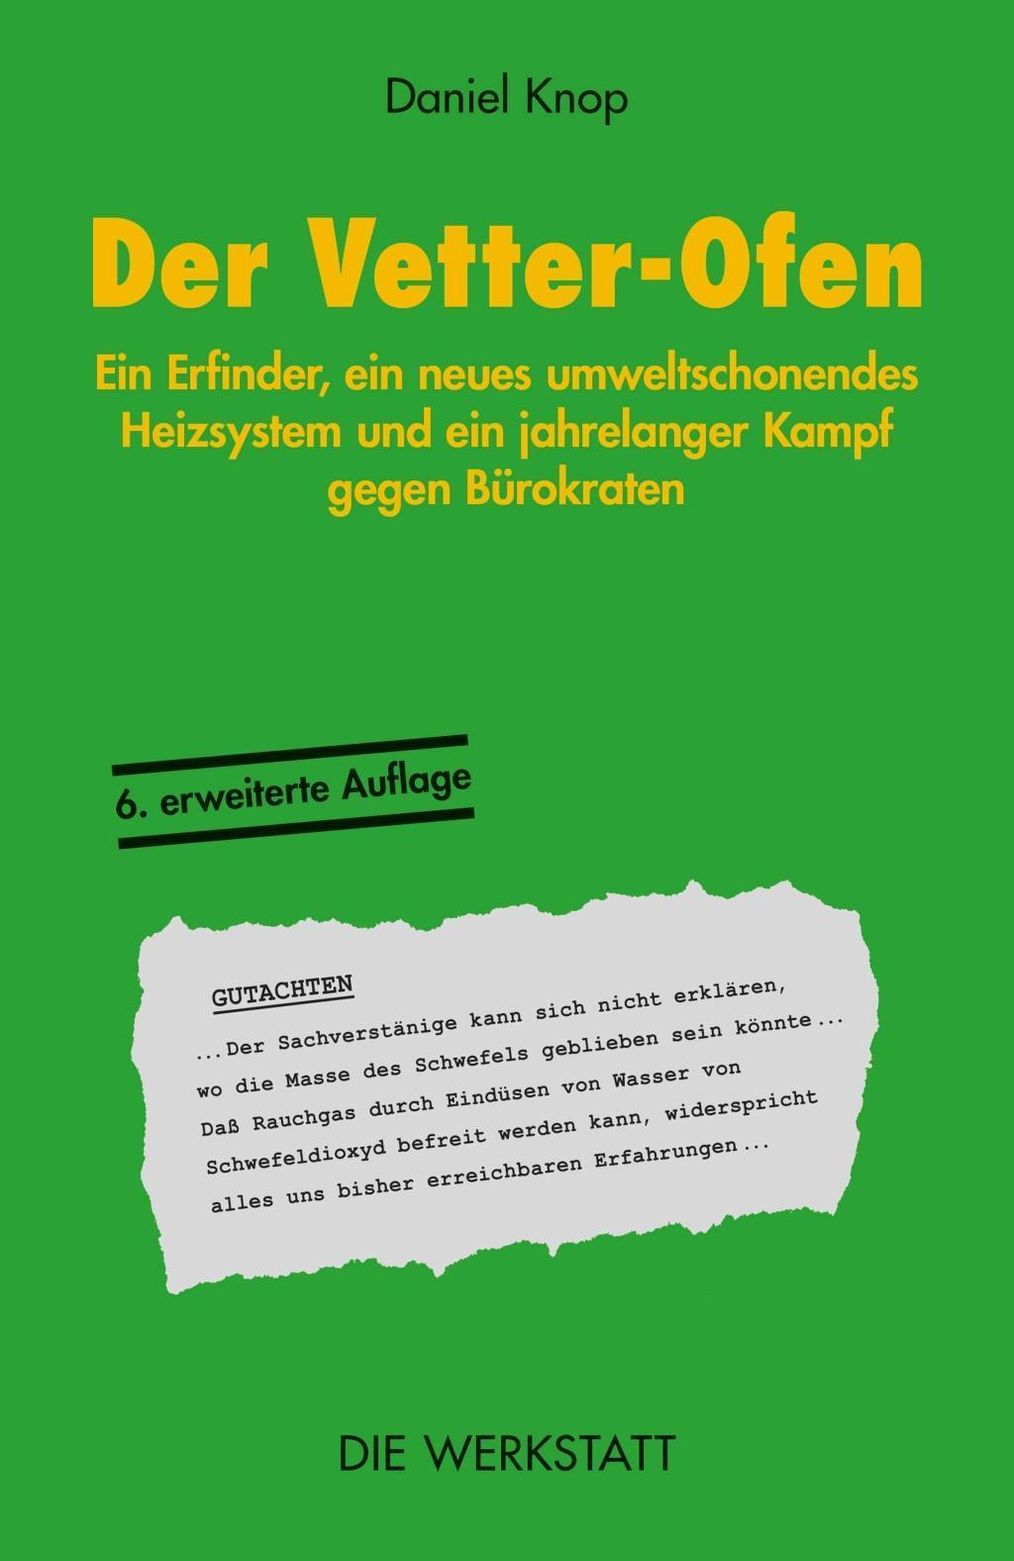 Der Vetter - Ofen Buch von Daniel Knop versandkostenfrei bei Weltbild.de